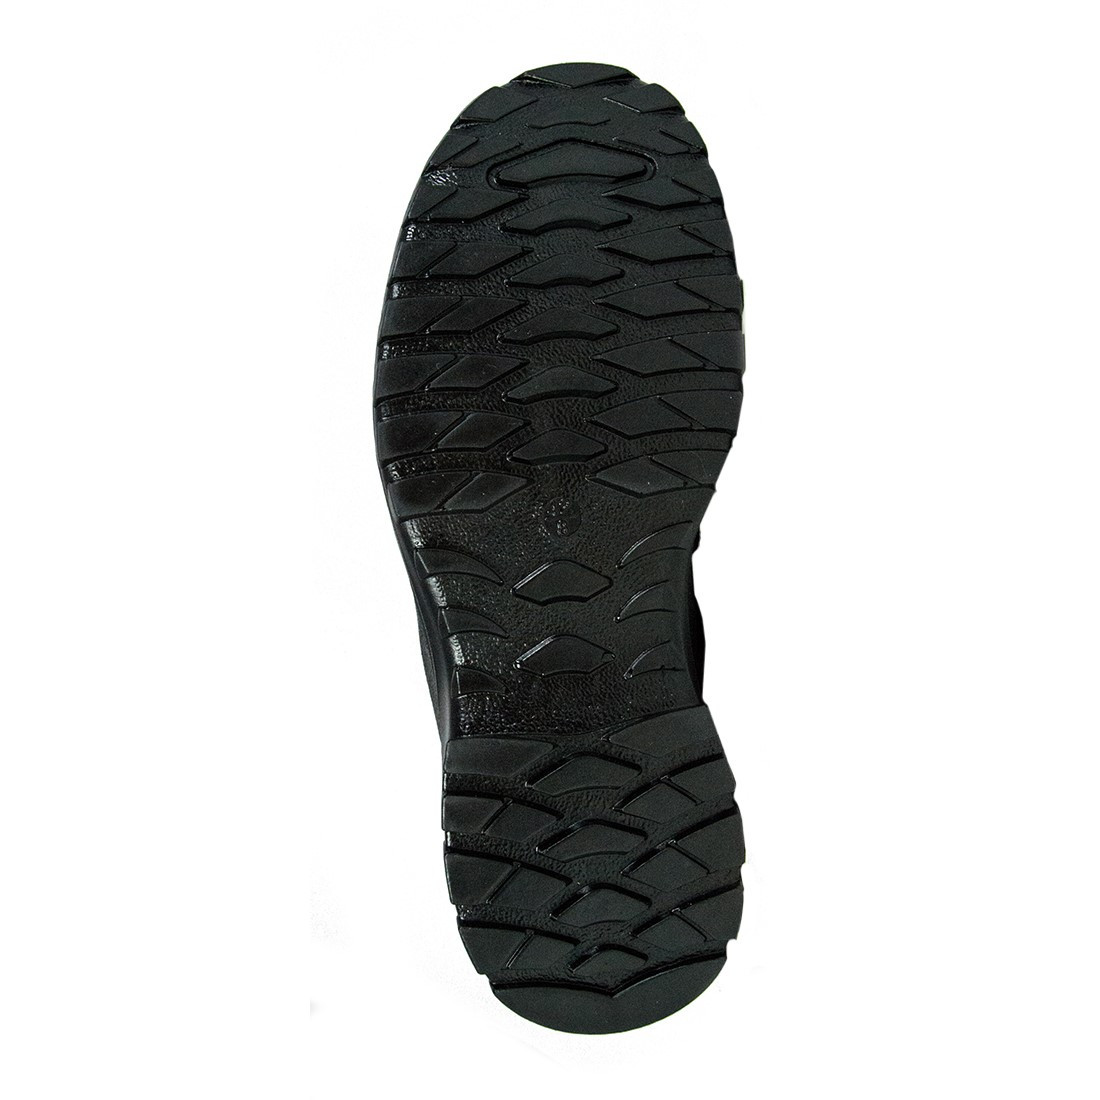 Geldof Boot S3 SRC - Les chaussures de protection